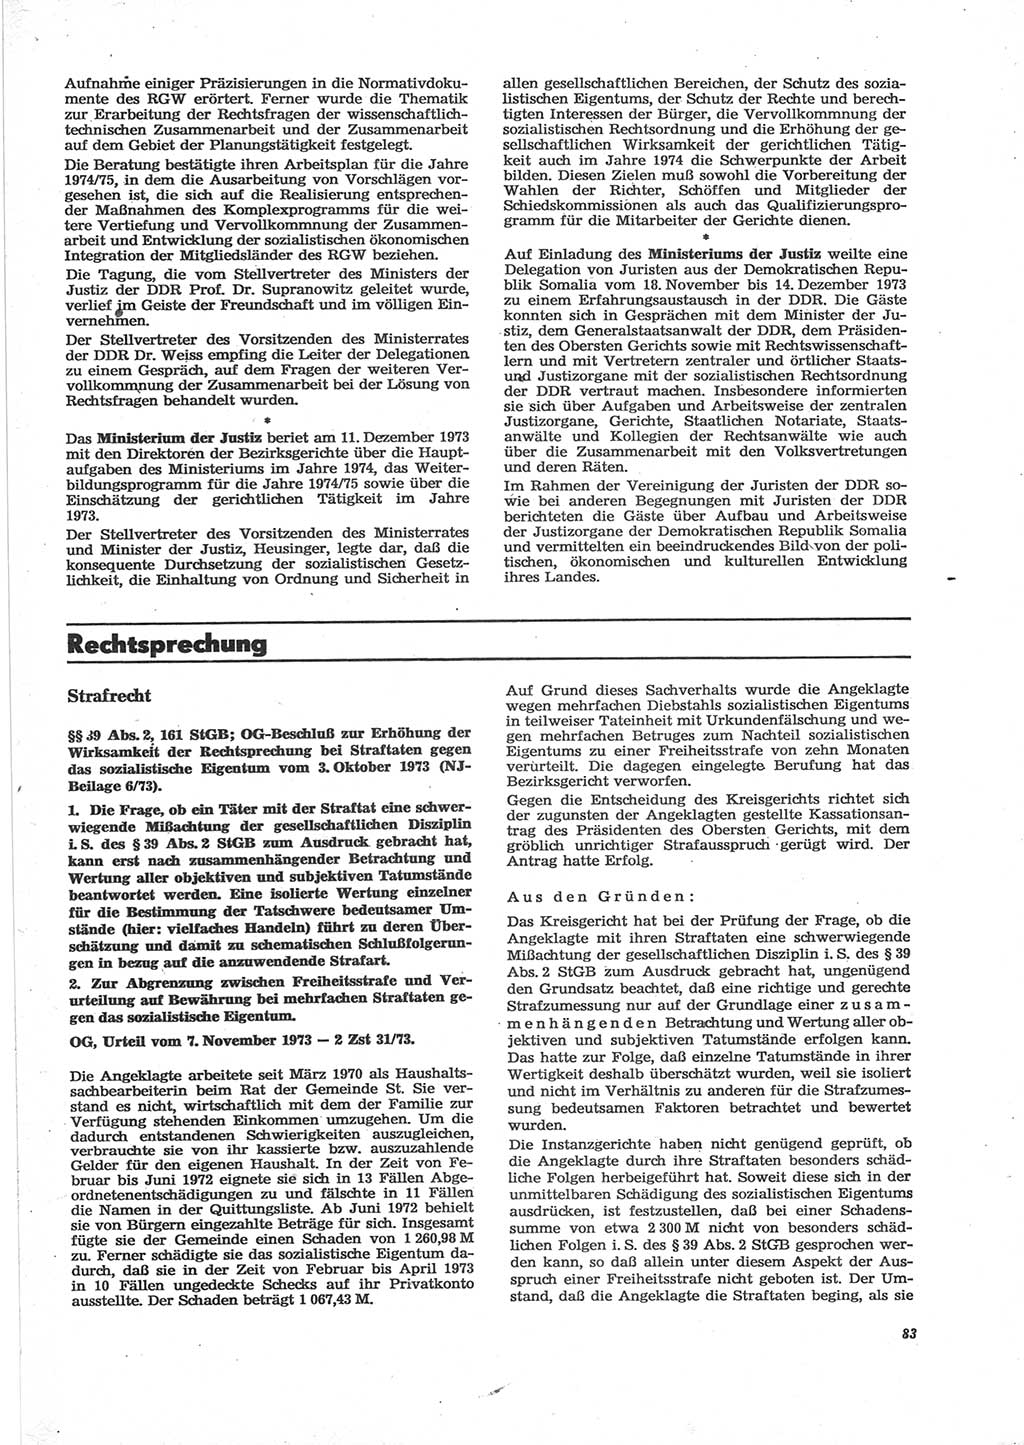 Neue Justiz (NJ), Zeitschrift für Recht und Rechtswissenschaft [Deutsche Demokratische Republik (DDR)], 28. Jahrgang 1974, Seite 83 (NJ DDR 1974, S. 83)